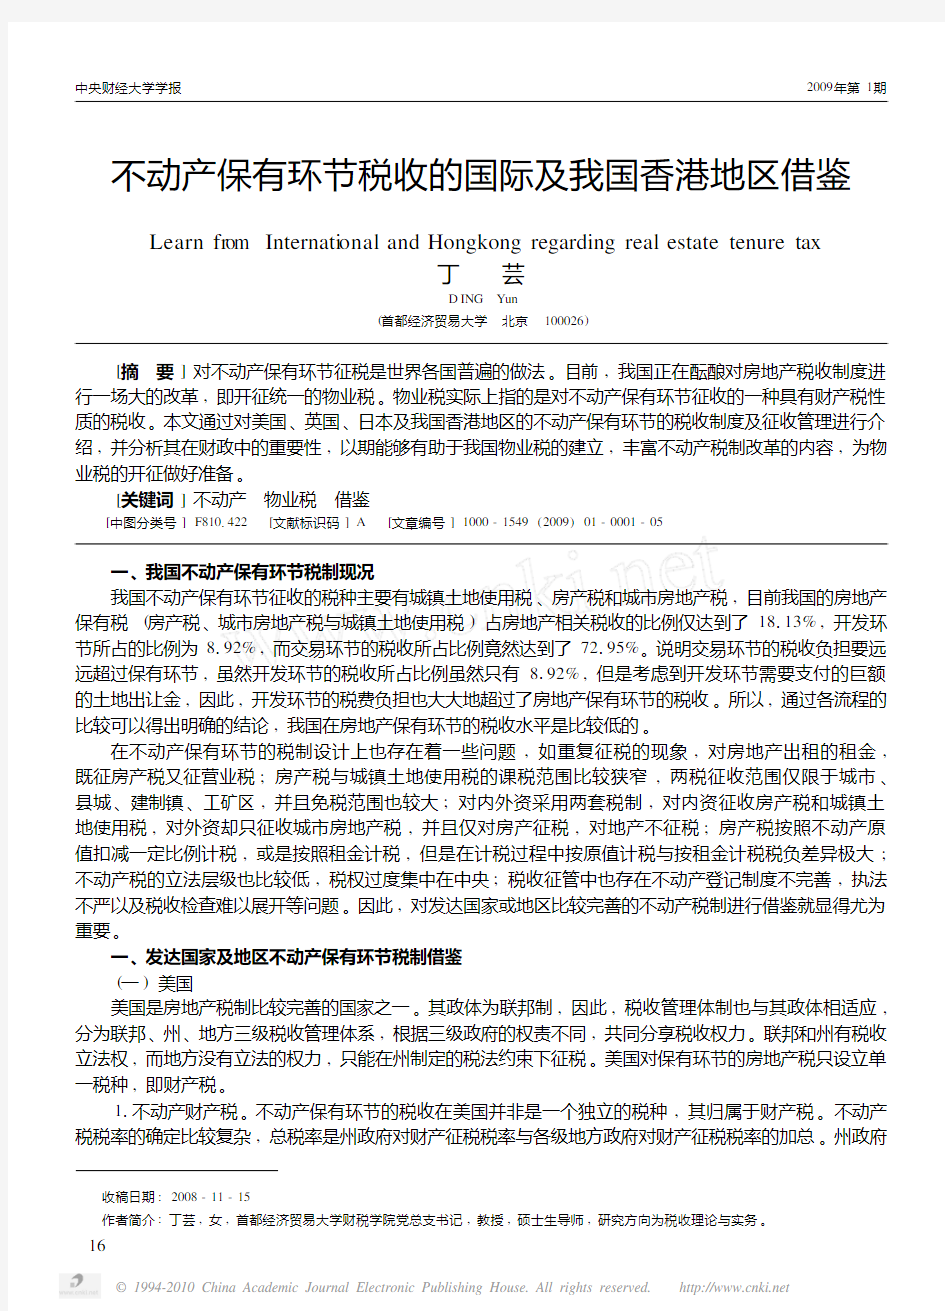 不动产保有环节税收的国际及我国香港地区借鉴